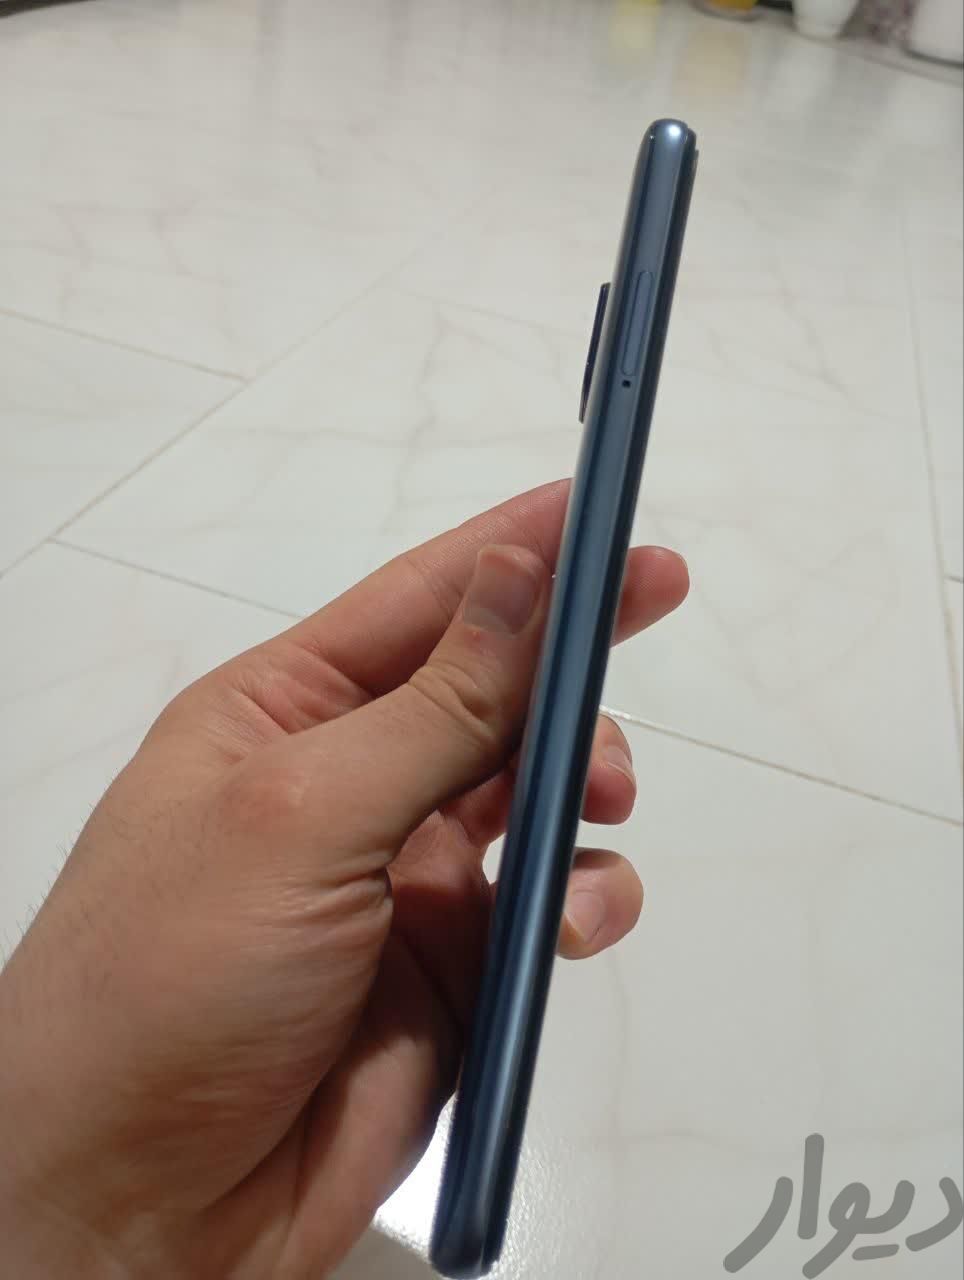 شیائومی Redmi Note 9S ۶۴ گیگابایت|موبایل|تهران, ازگل|دیوار